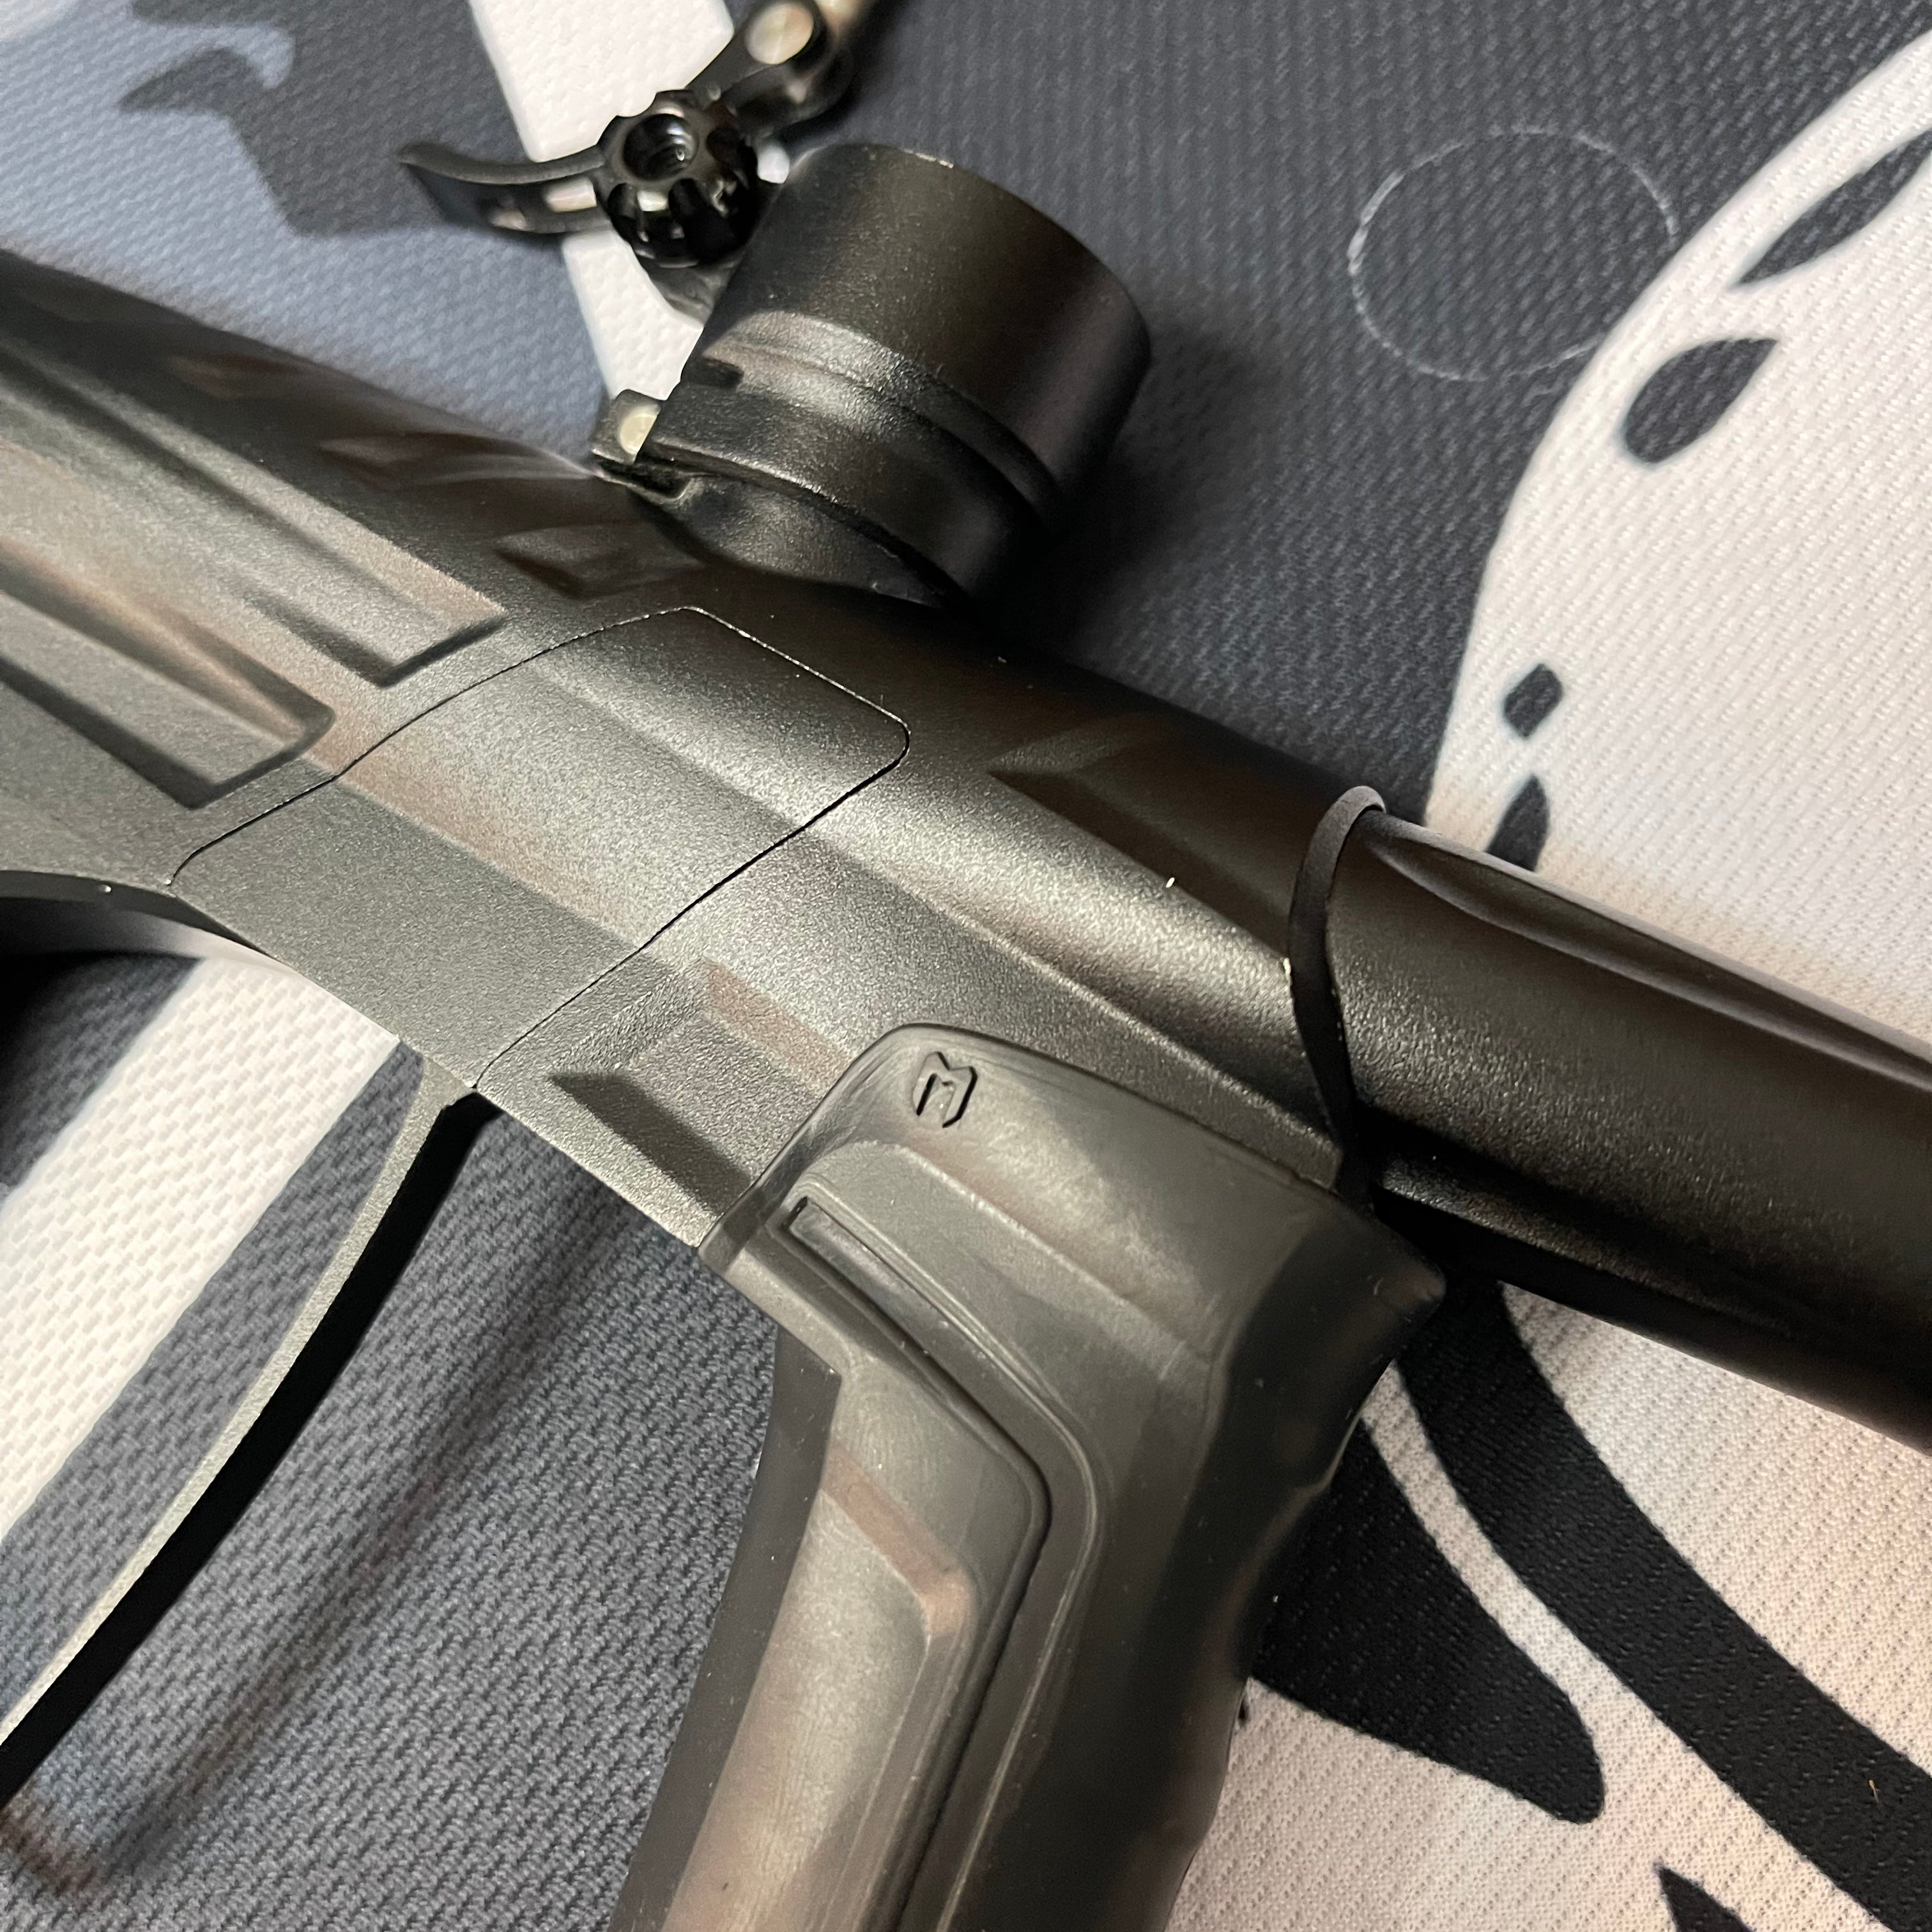 Used MacDev Prime XTS Paintball Gun - Dust Black